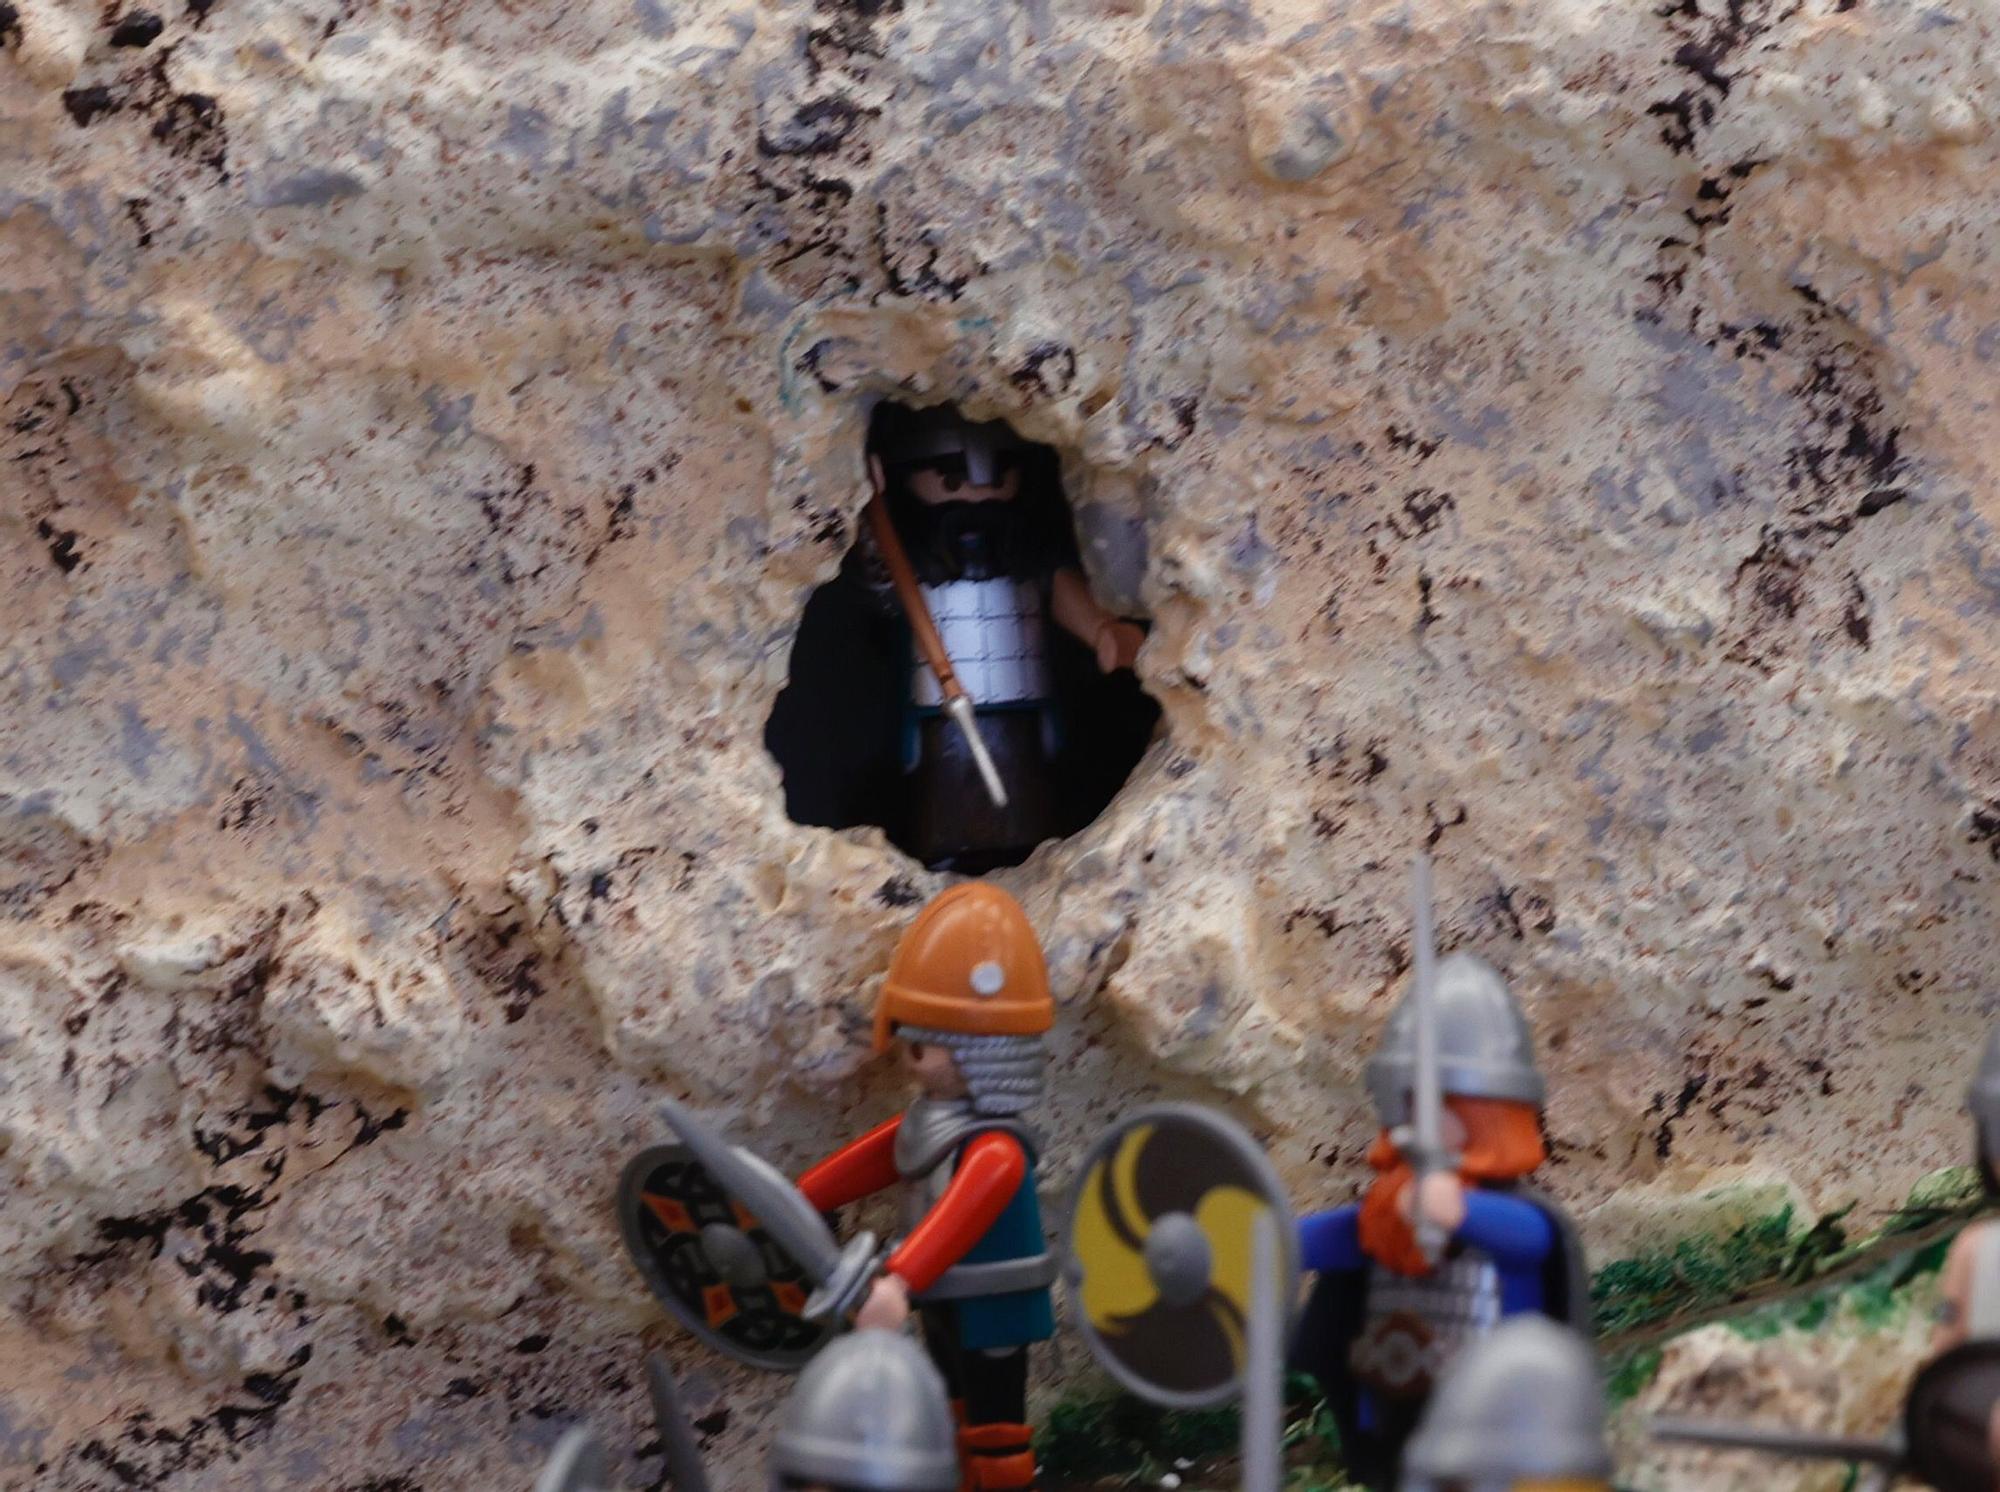 EN IMÁGENES: Así es la recreación de la batalla de Covadonga con muñecos de Playmobil